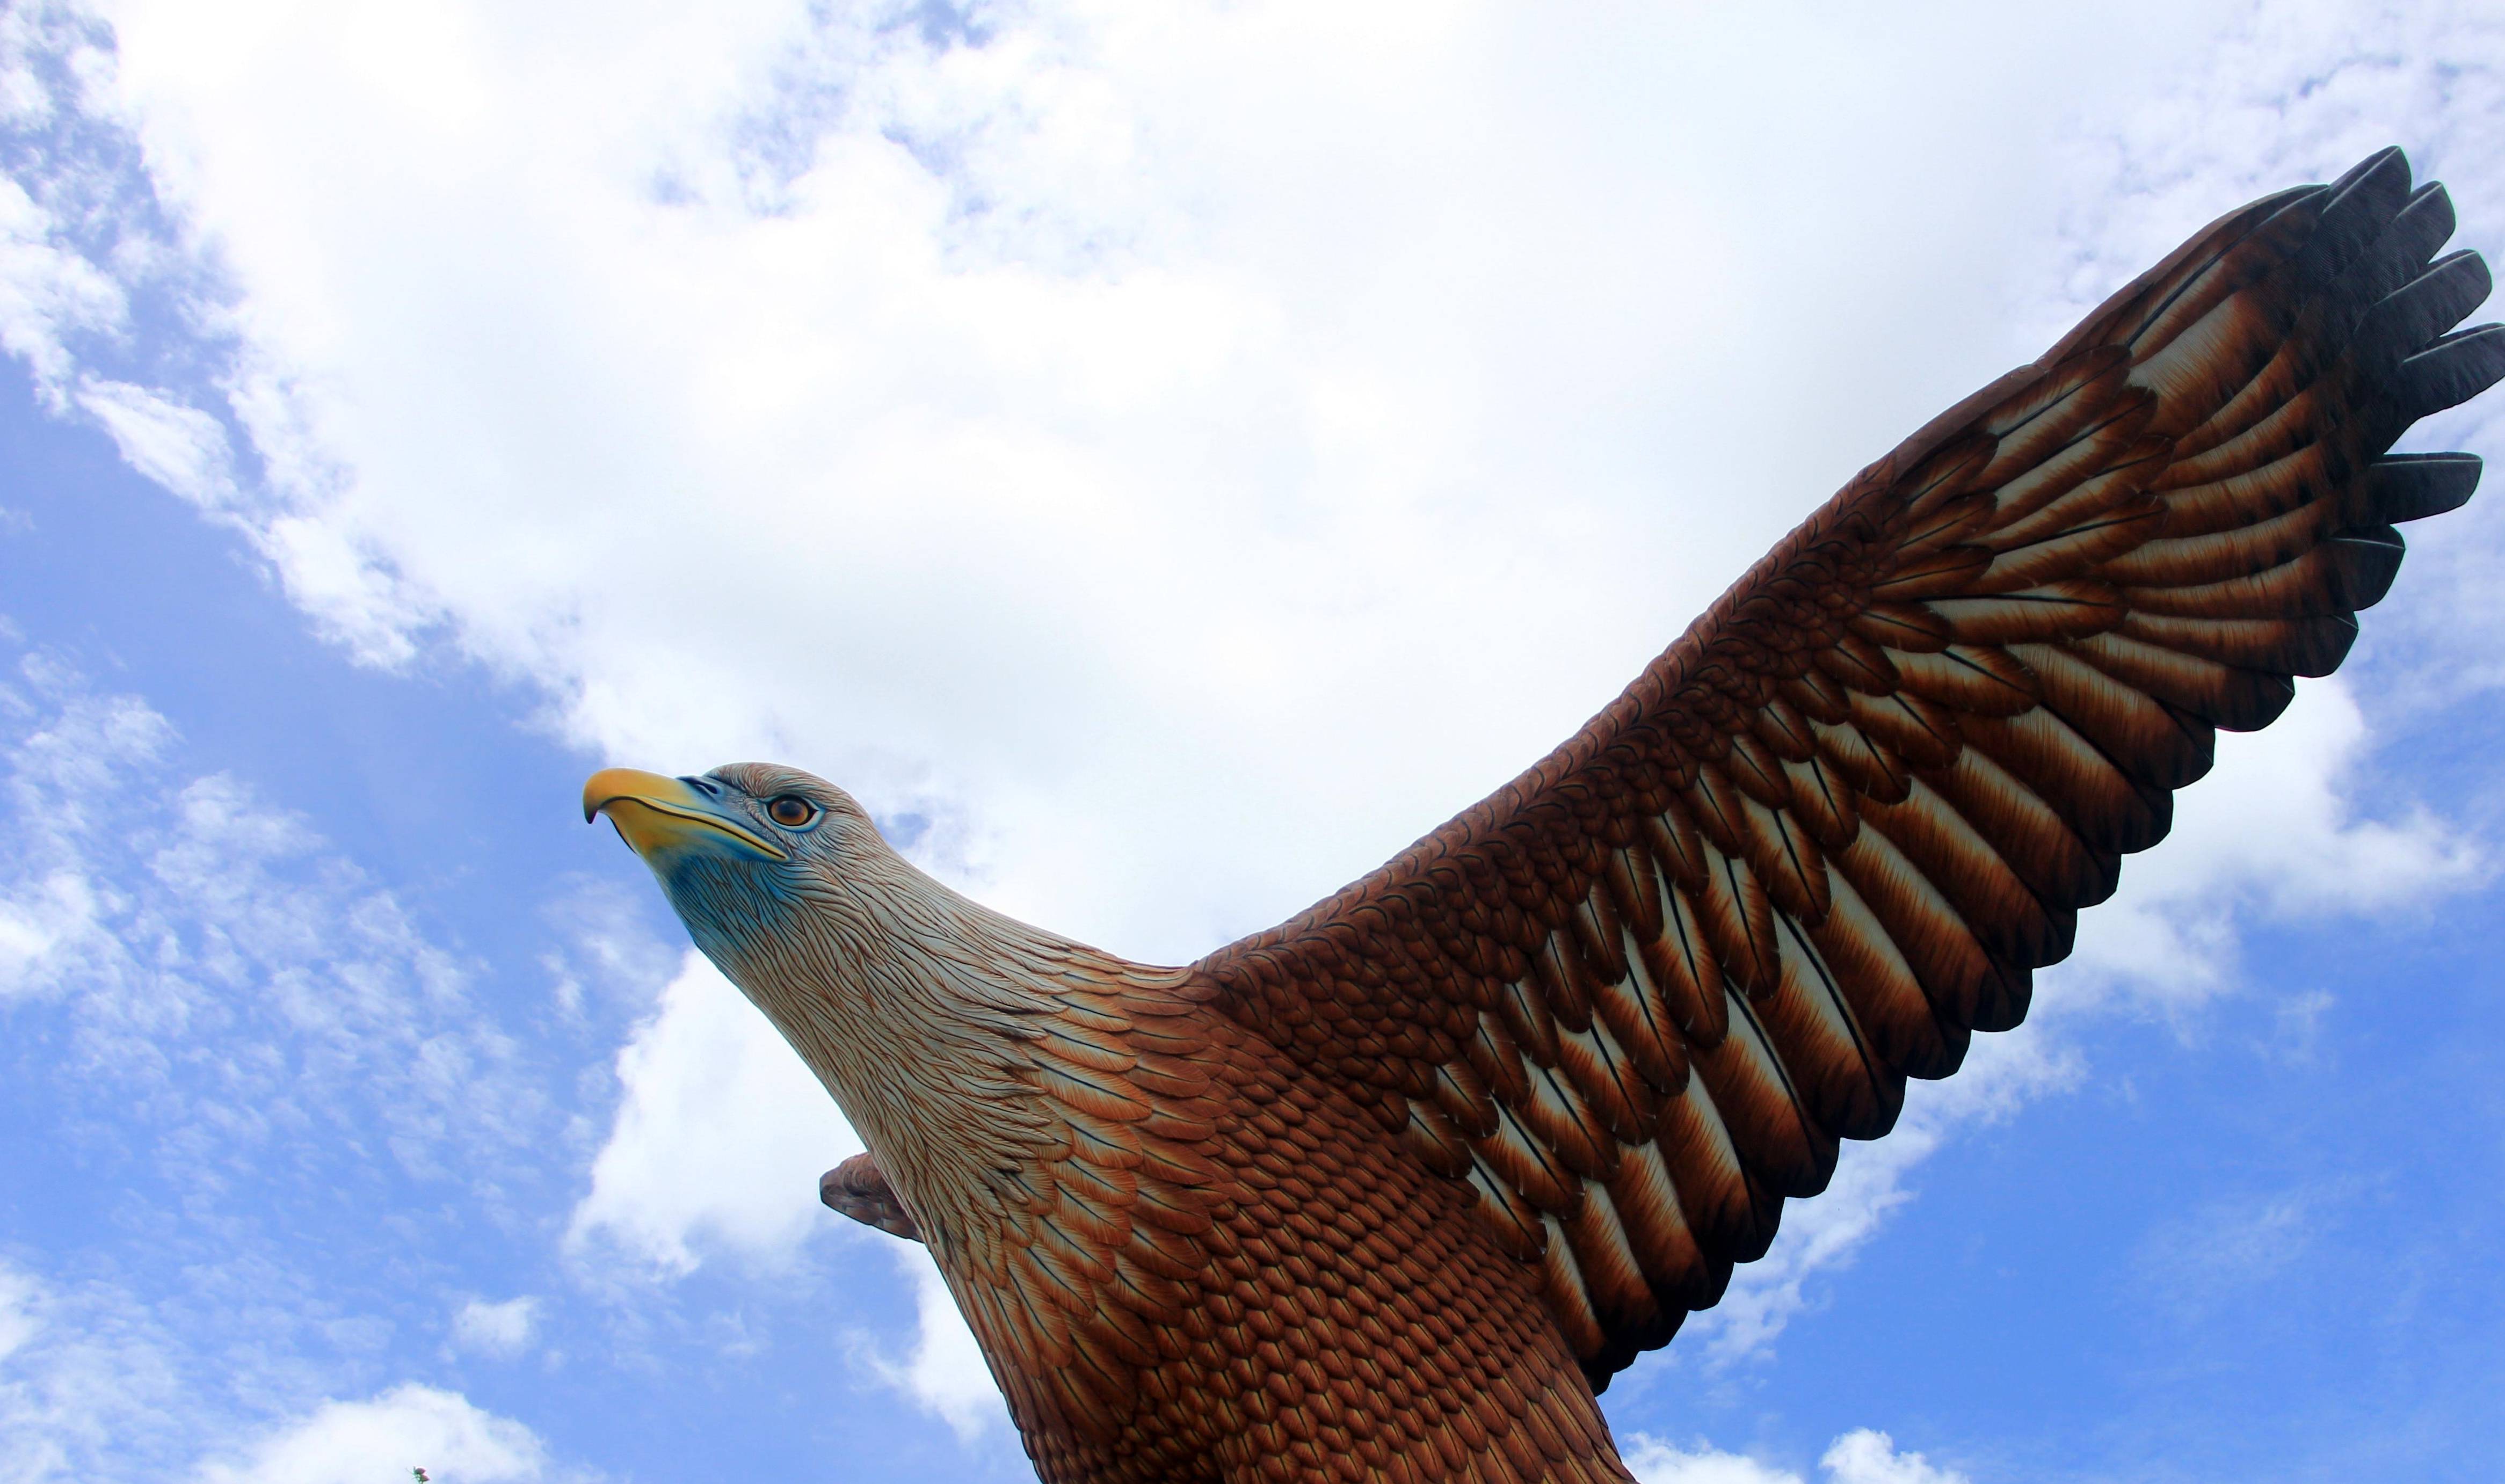 原创世界上最大的鹰:张开翅膀有轻型飞机大小,凶狠到老虎都怕